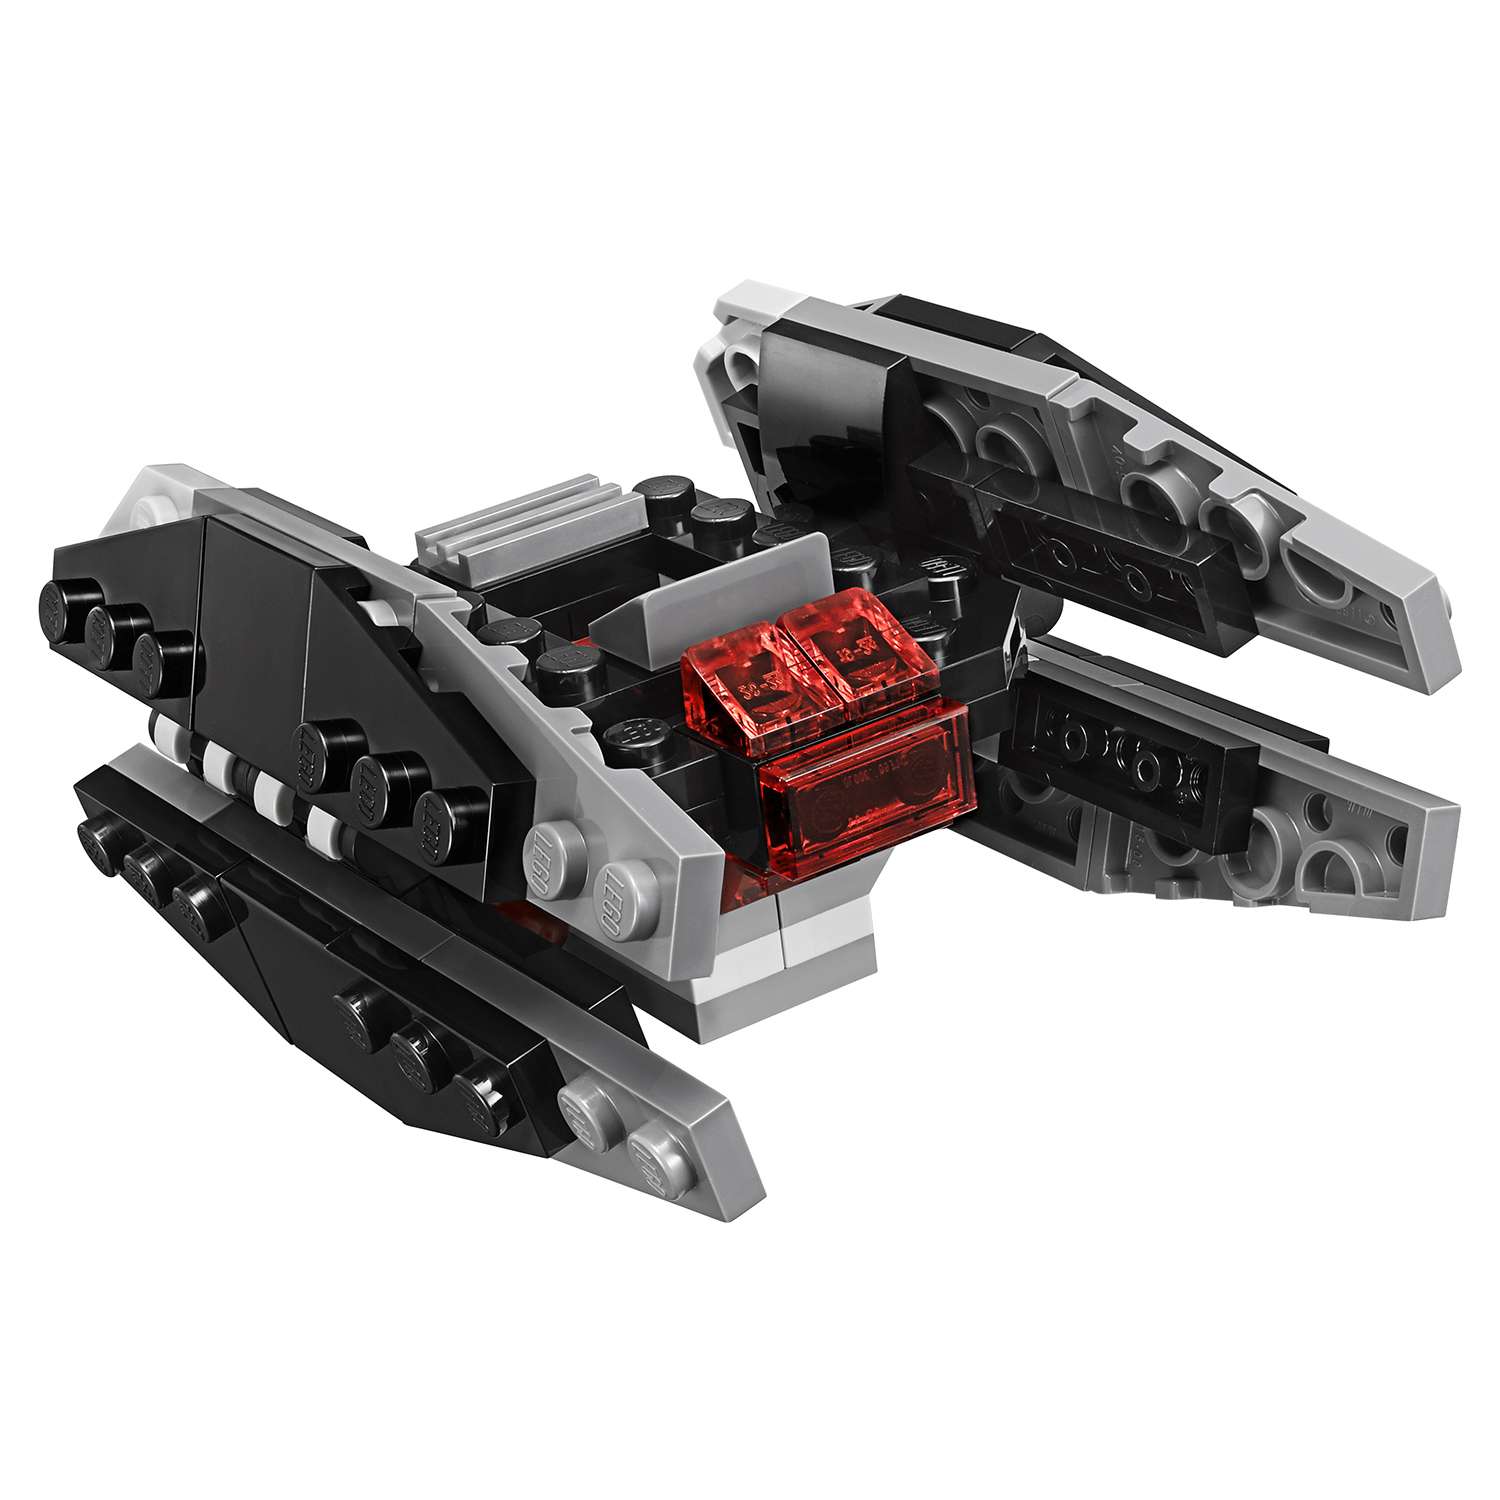 Конструктор LEGO Истребитель типа A против бесшумного истребителя СИД (75196) - фото 6